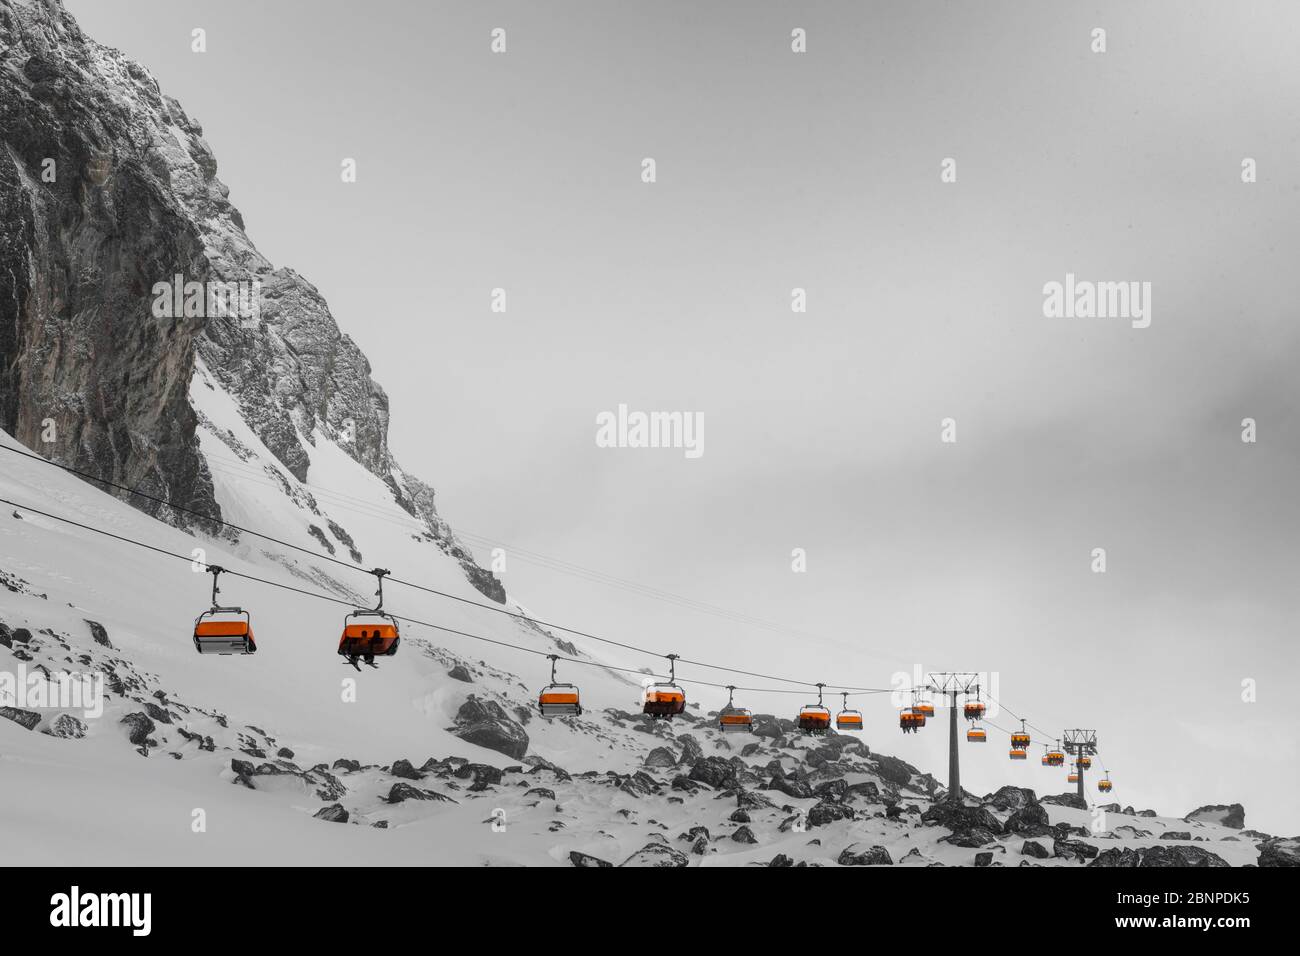 Svizzera, Graubünden, Samnaun, Austria, Tirolo, Ischgl, seggiovia da Alp Trida al Viderjoch in una giornata di tempesta Foto Stock